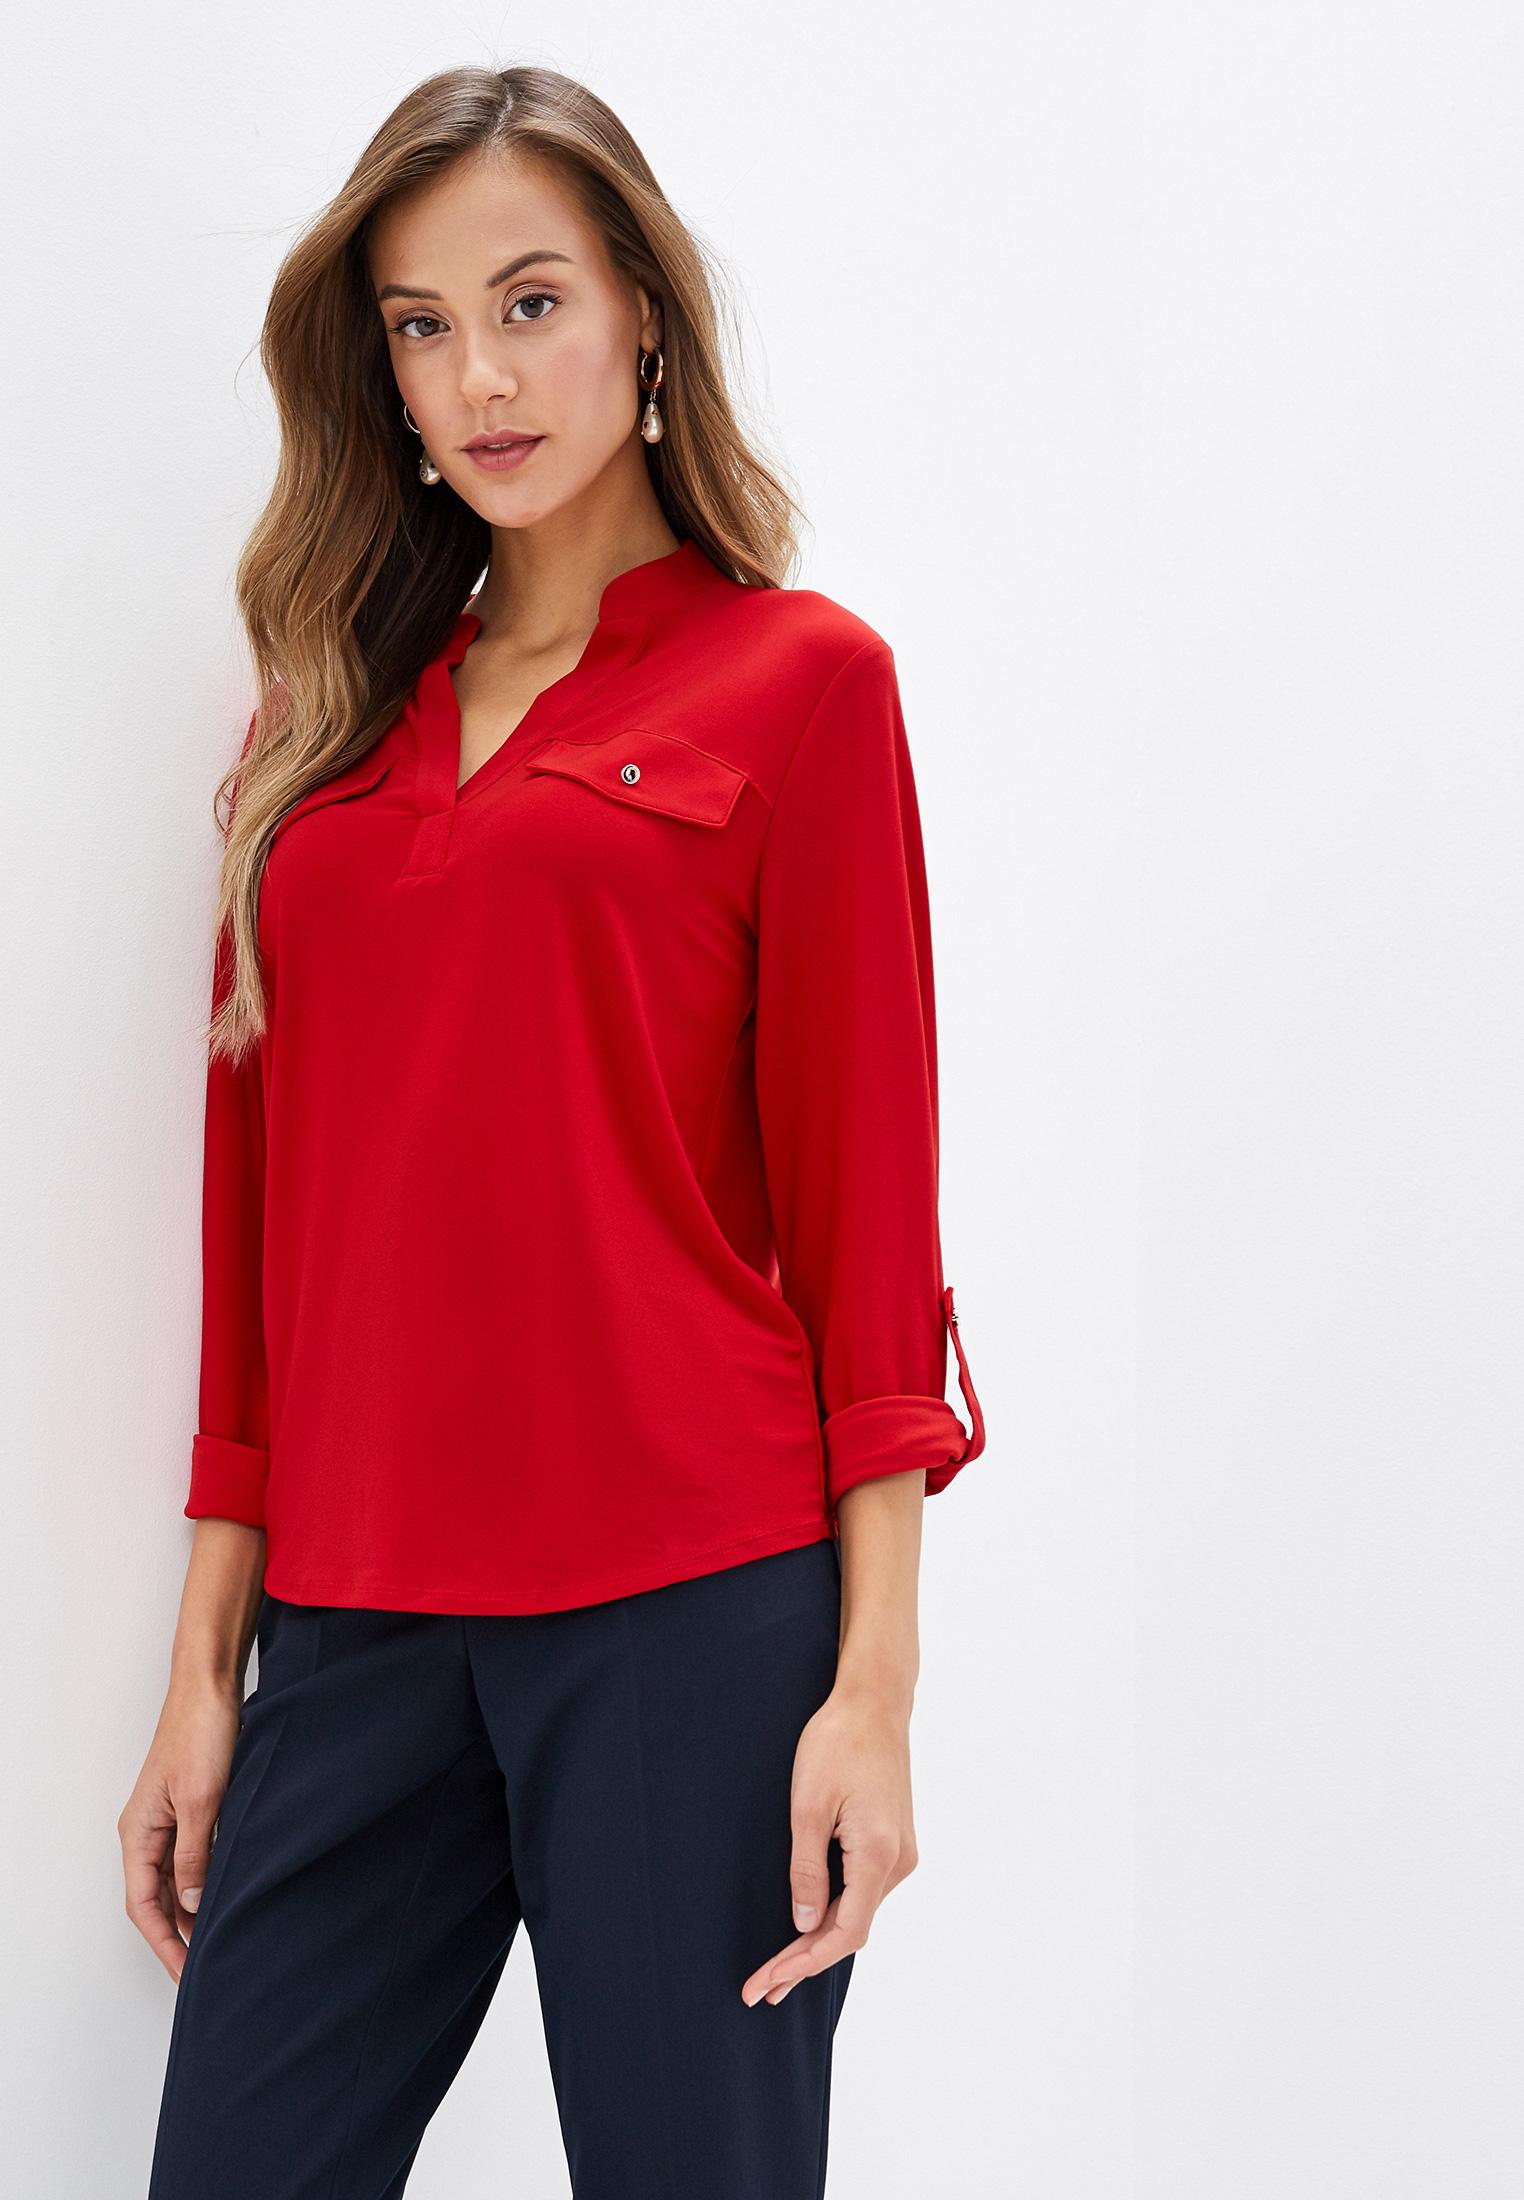 Блузки красного цвета. Дороти Перкинс блуза красная. Красная блузка. Блуза женская красная. Красные кофточки женские.